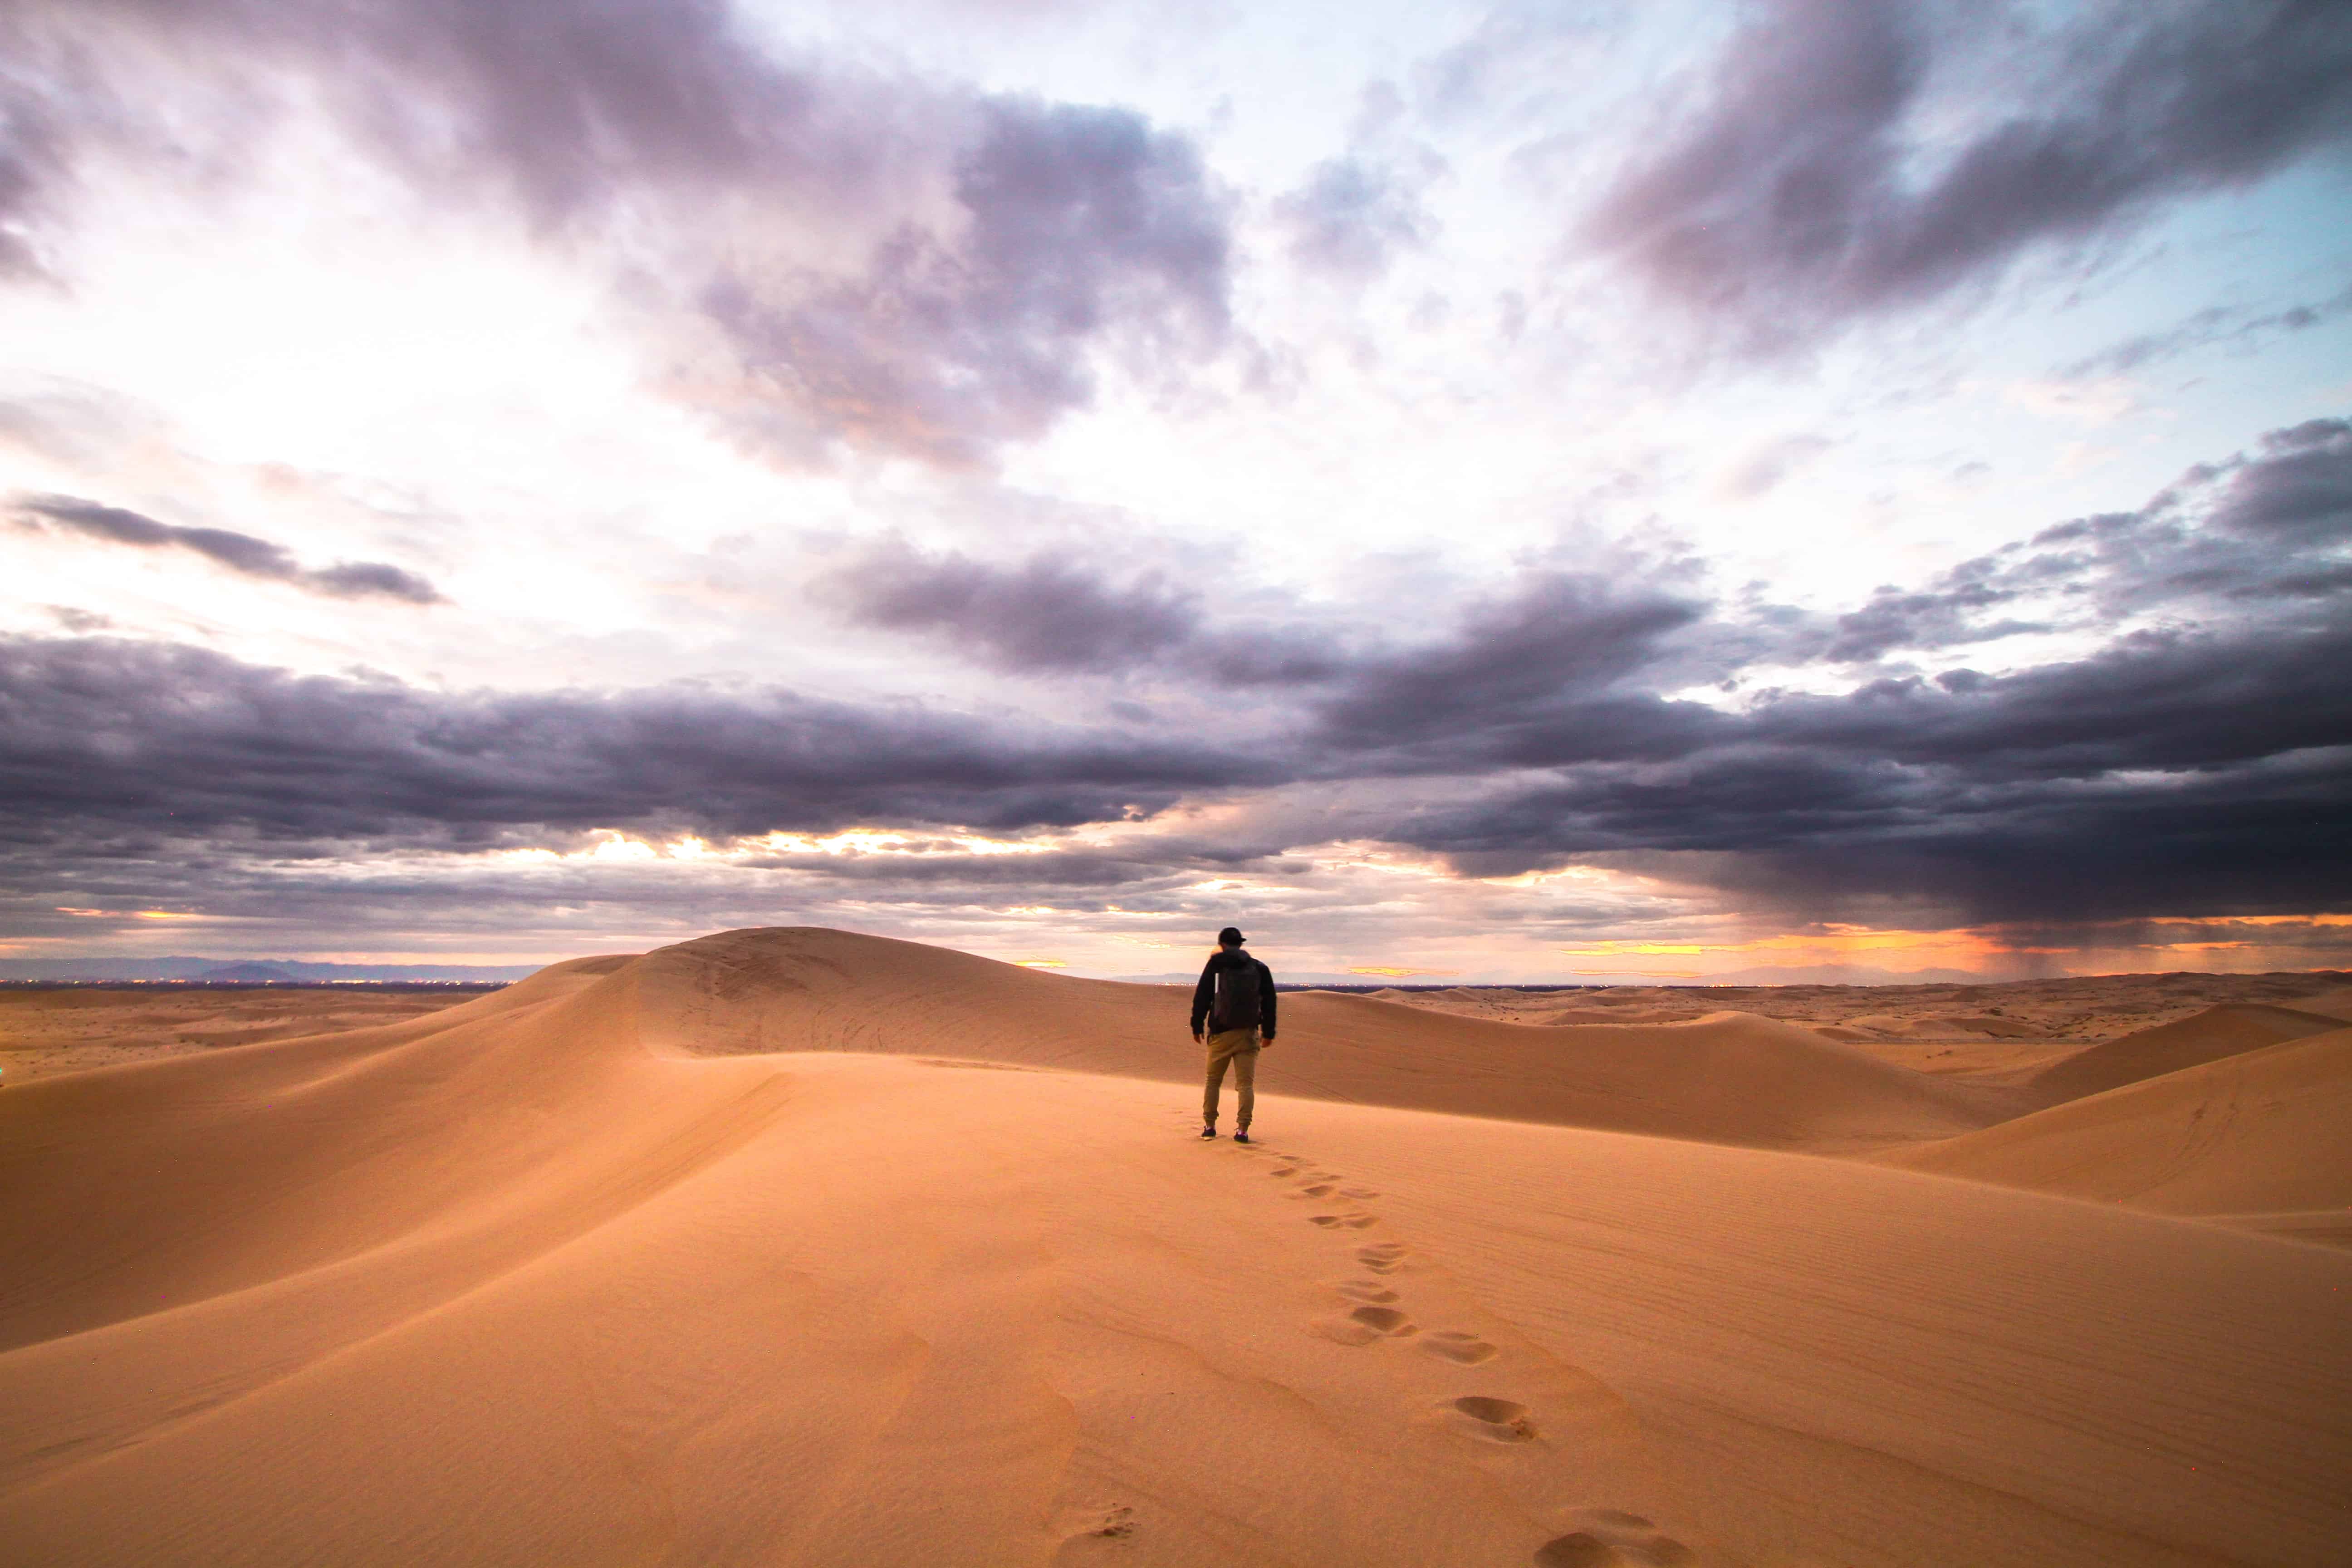 Man walking the desert, footprints being left behind.